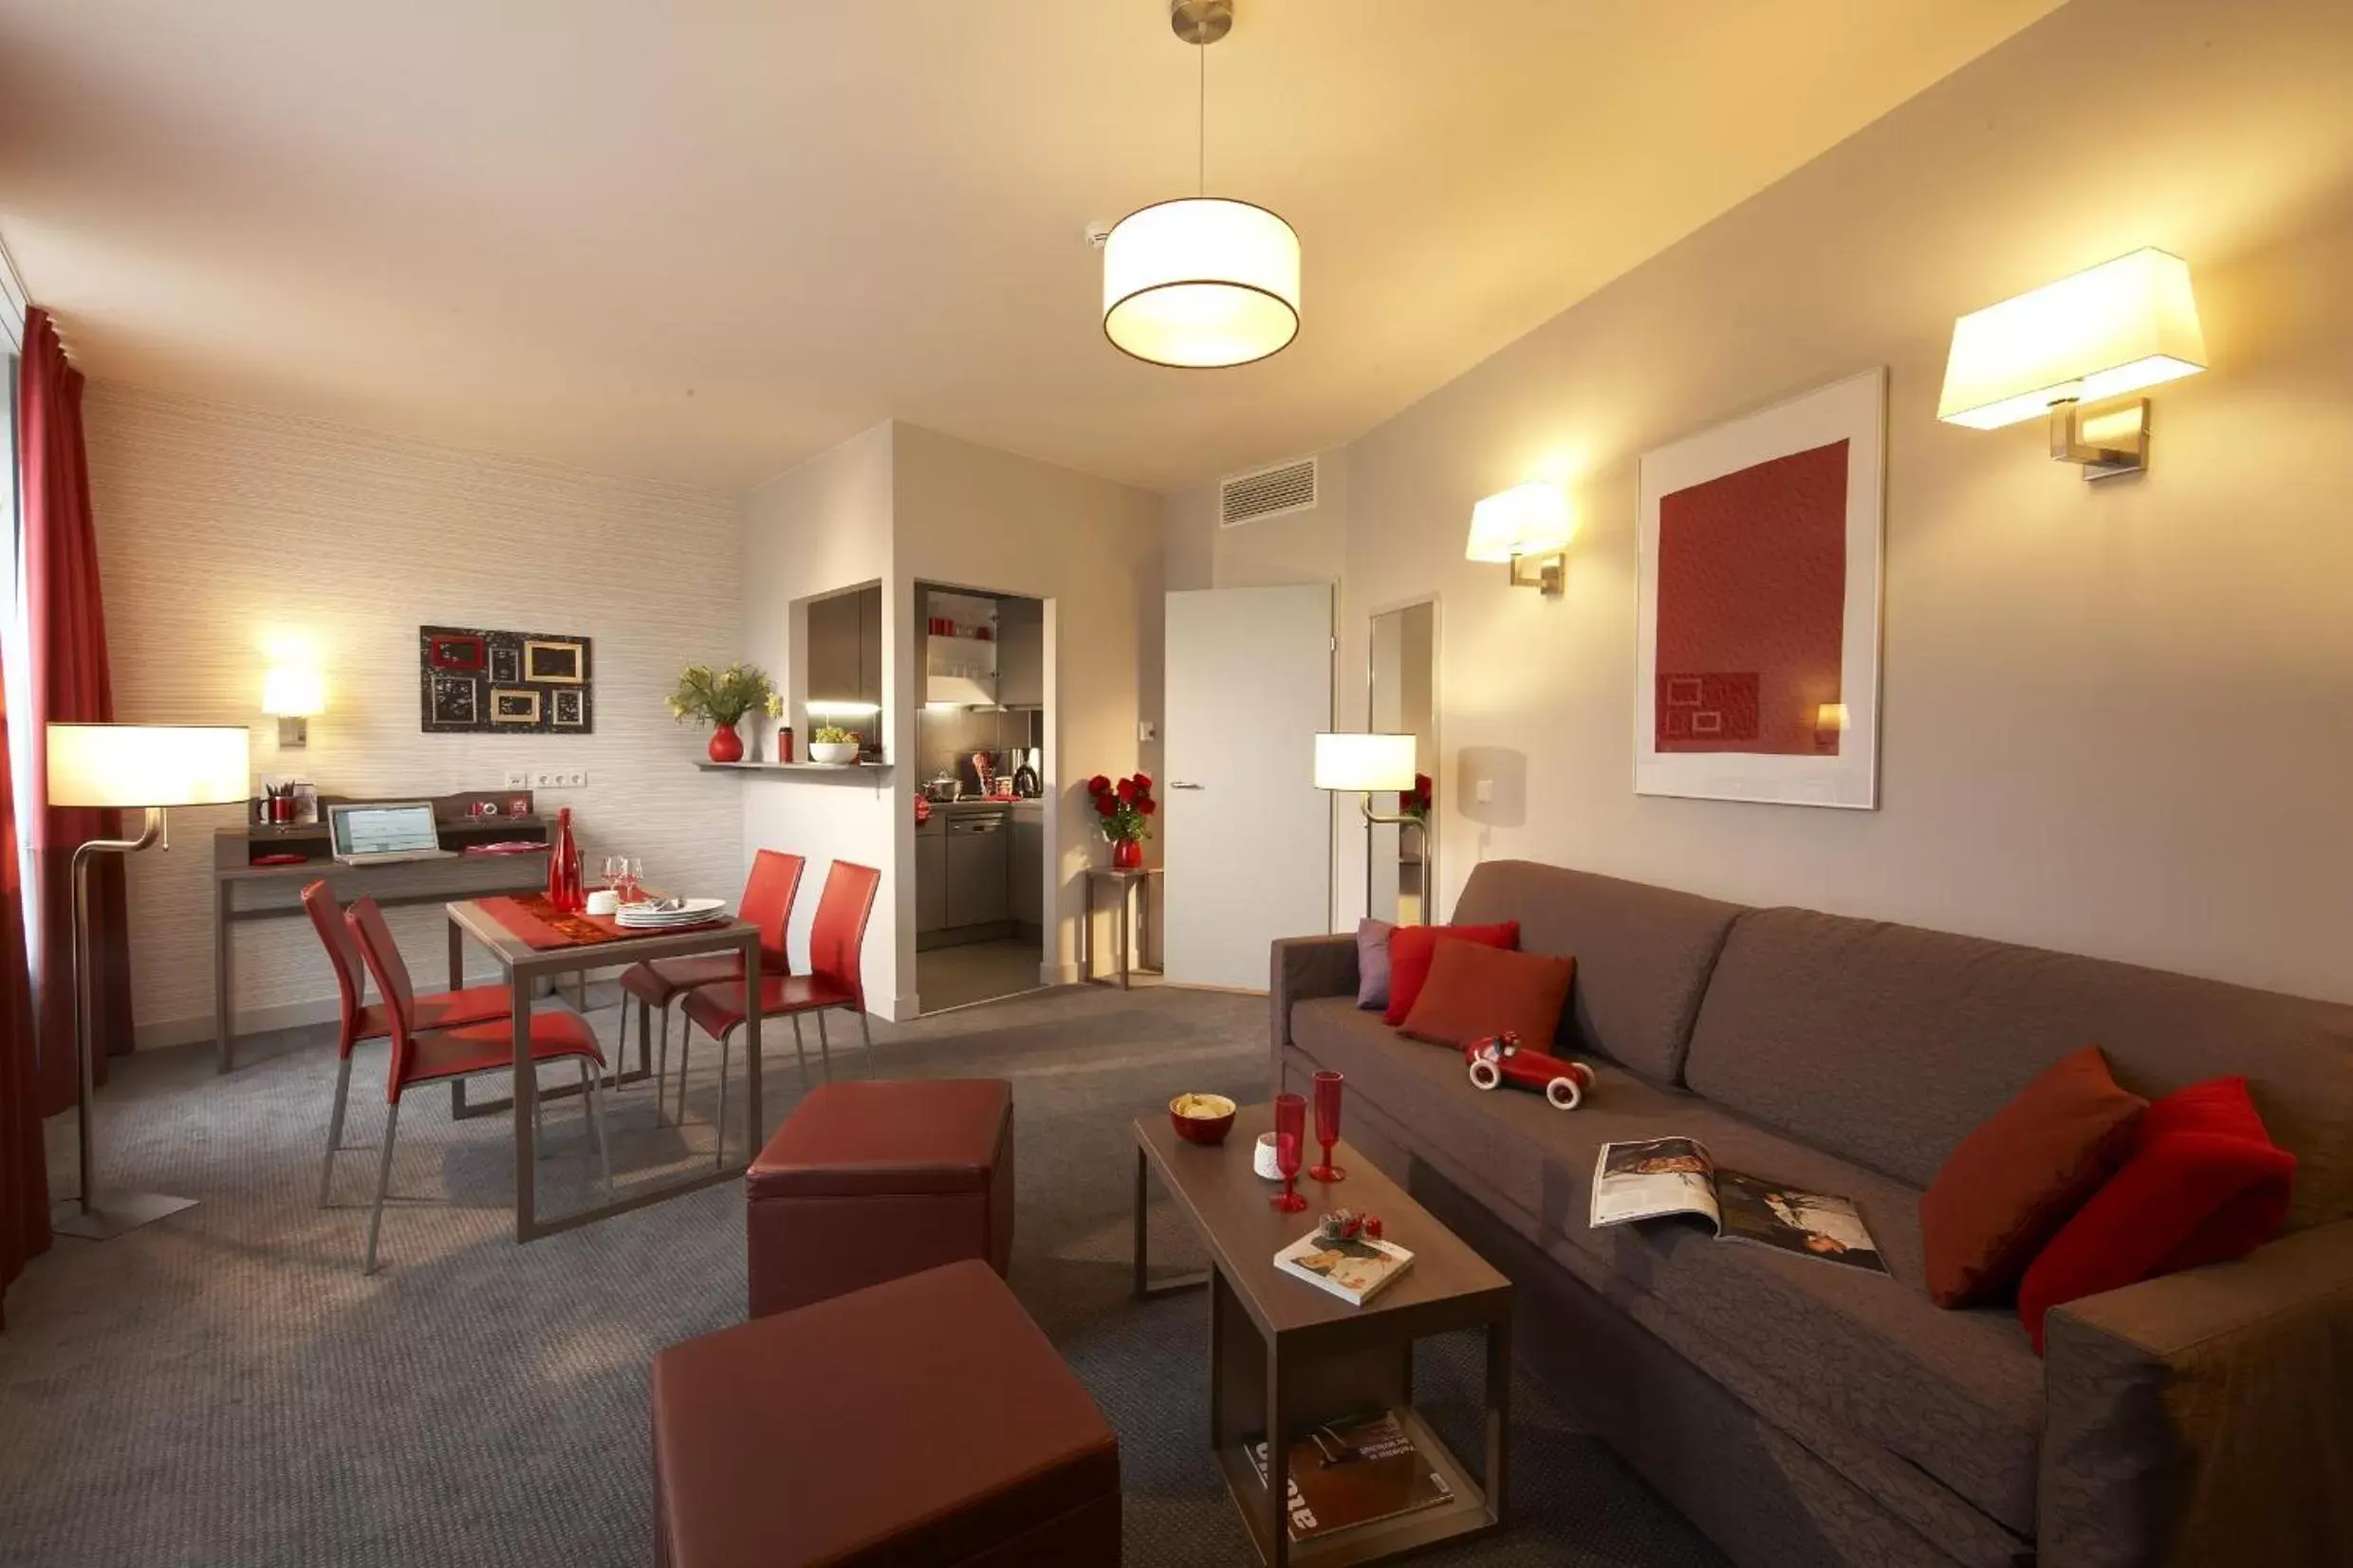 TV and multimedia, Seating Area in Aparthotel Adagio Vienna City